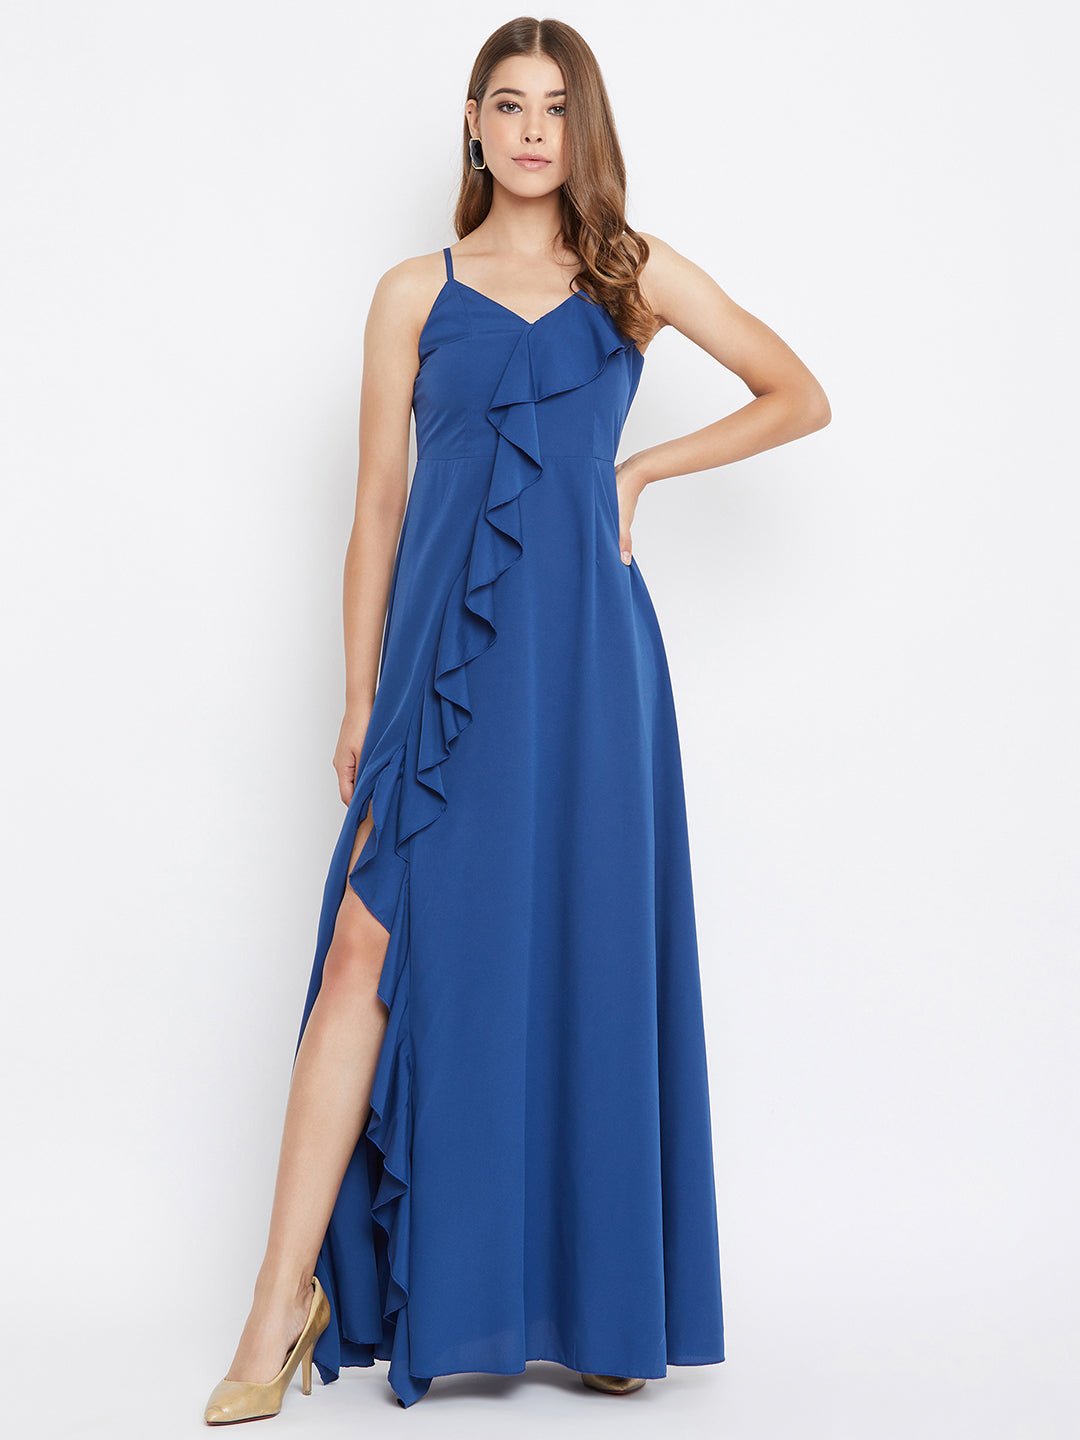 Folk Republic Women Solid Blue V-Neck Thigh-High Slit Ruffled Maxi Dress - #folk republic#